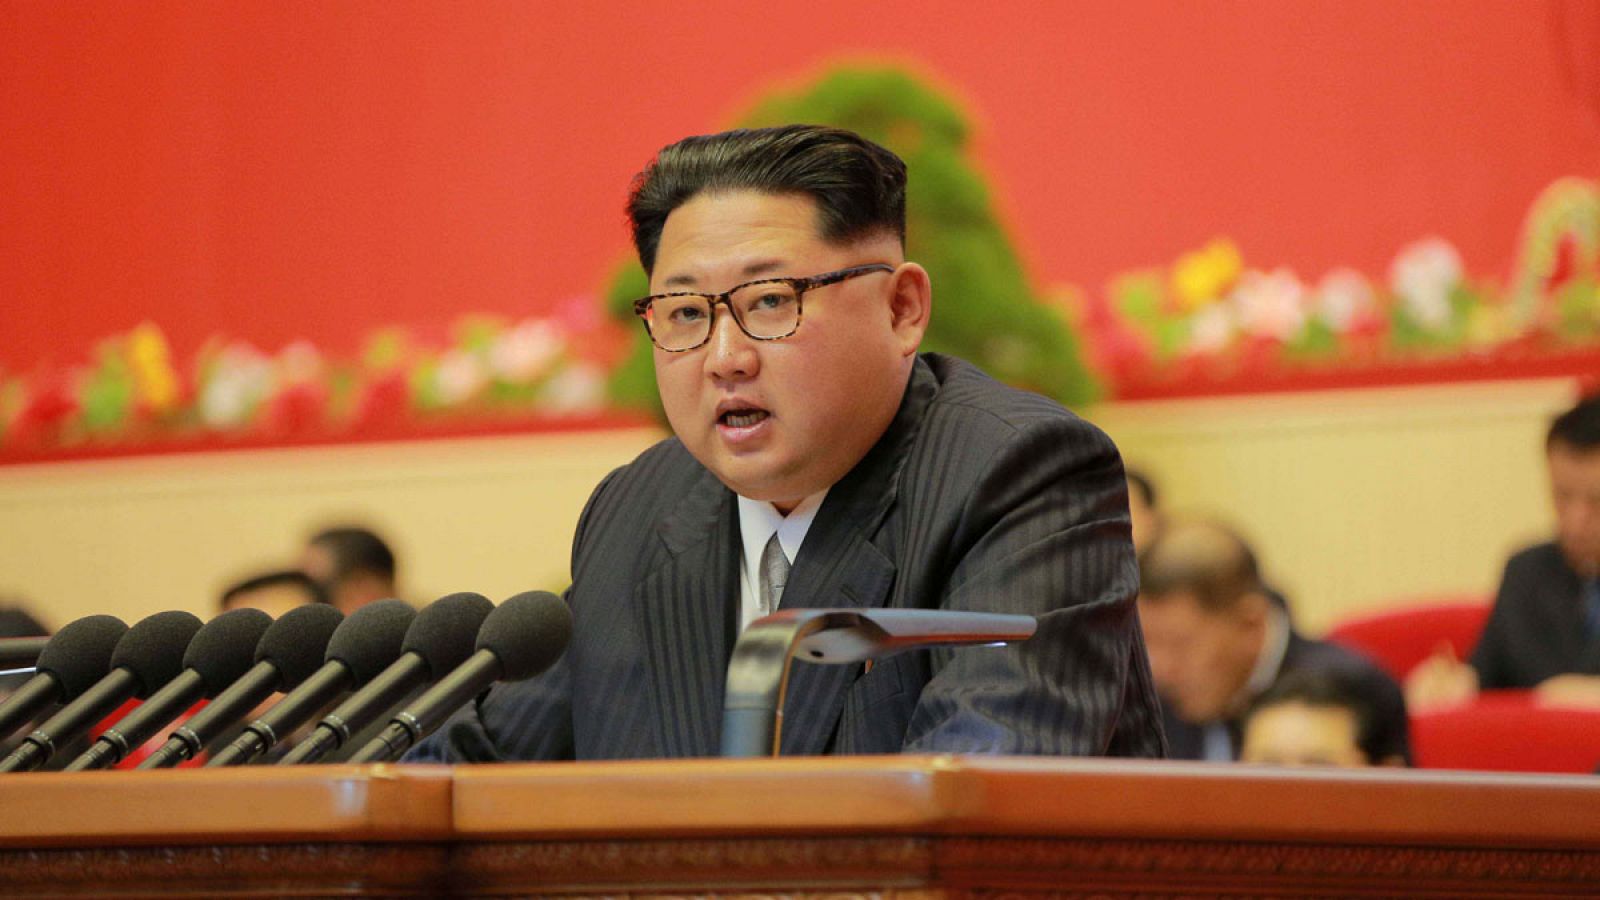 Imagen de la agencia norcoreana KCNA que muestra a Kim Jong-Un durante el VII Congreso del Partido de los Trabajadores.